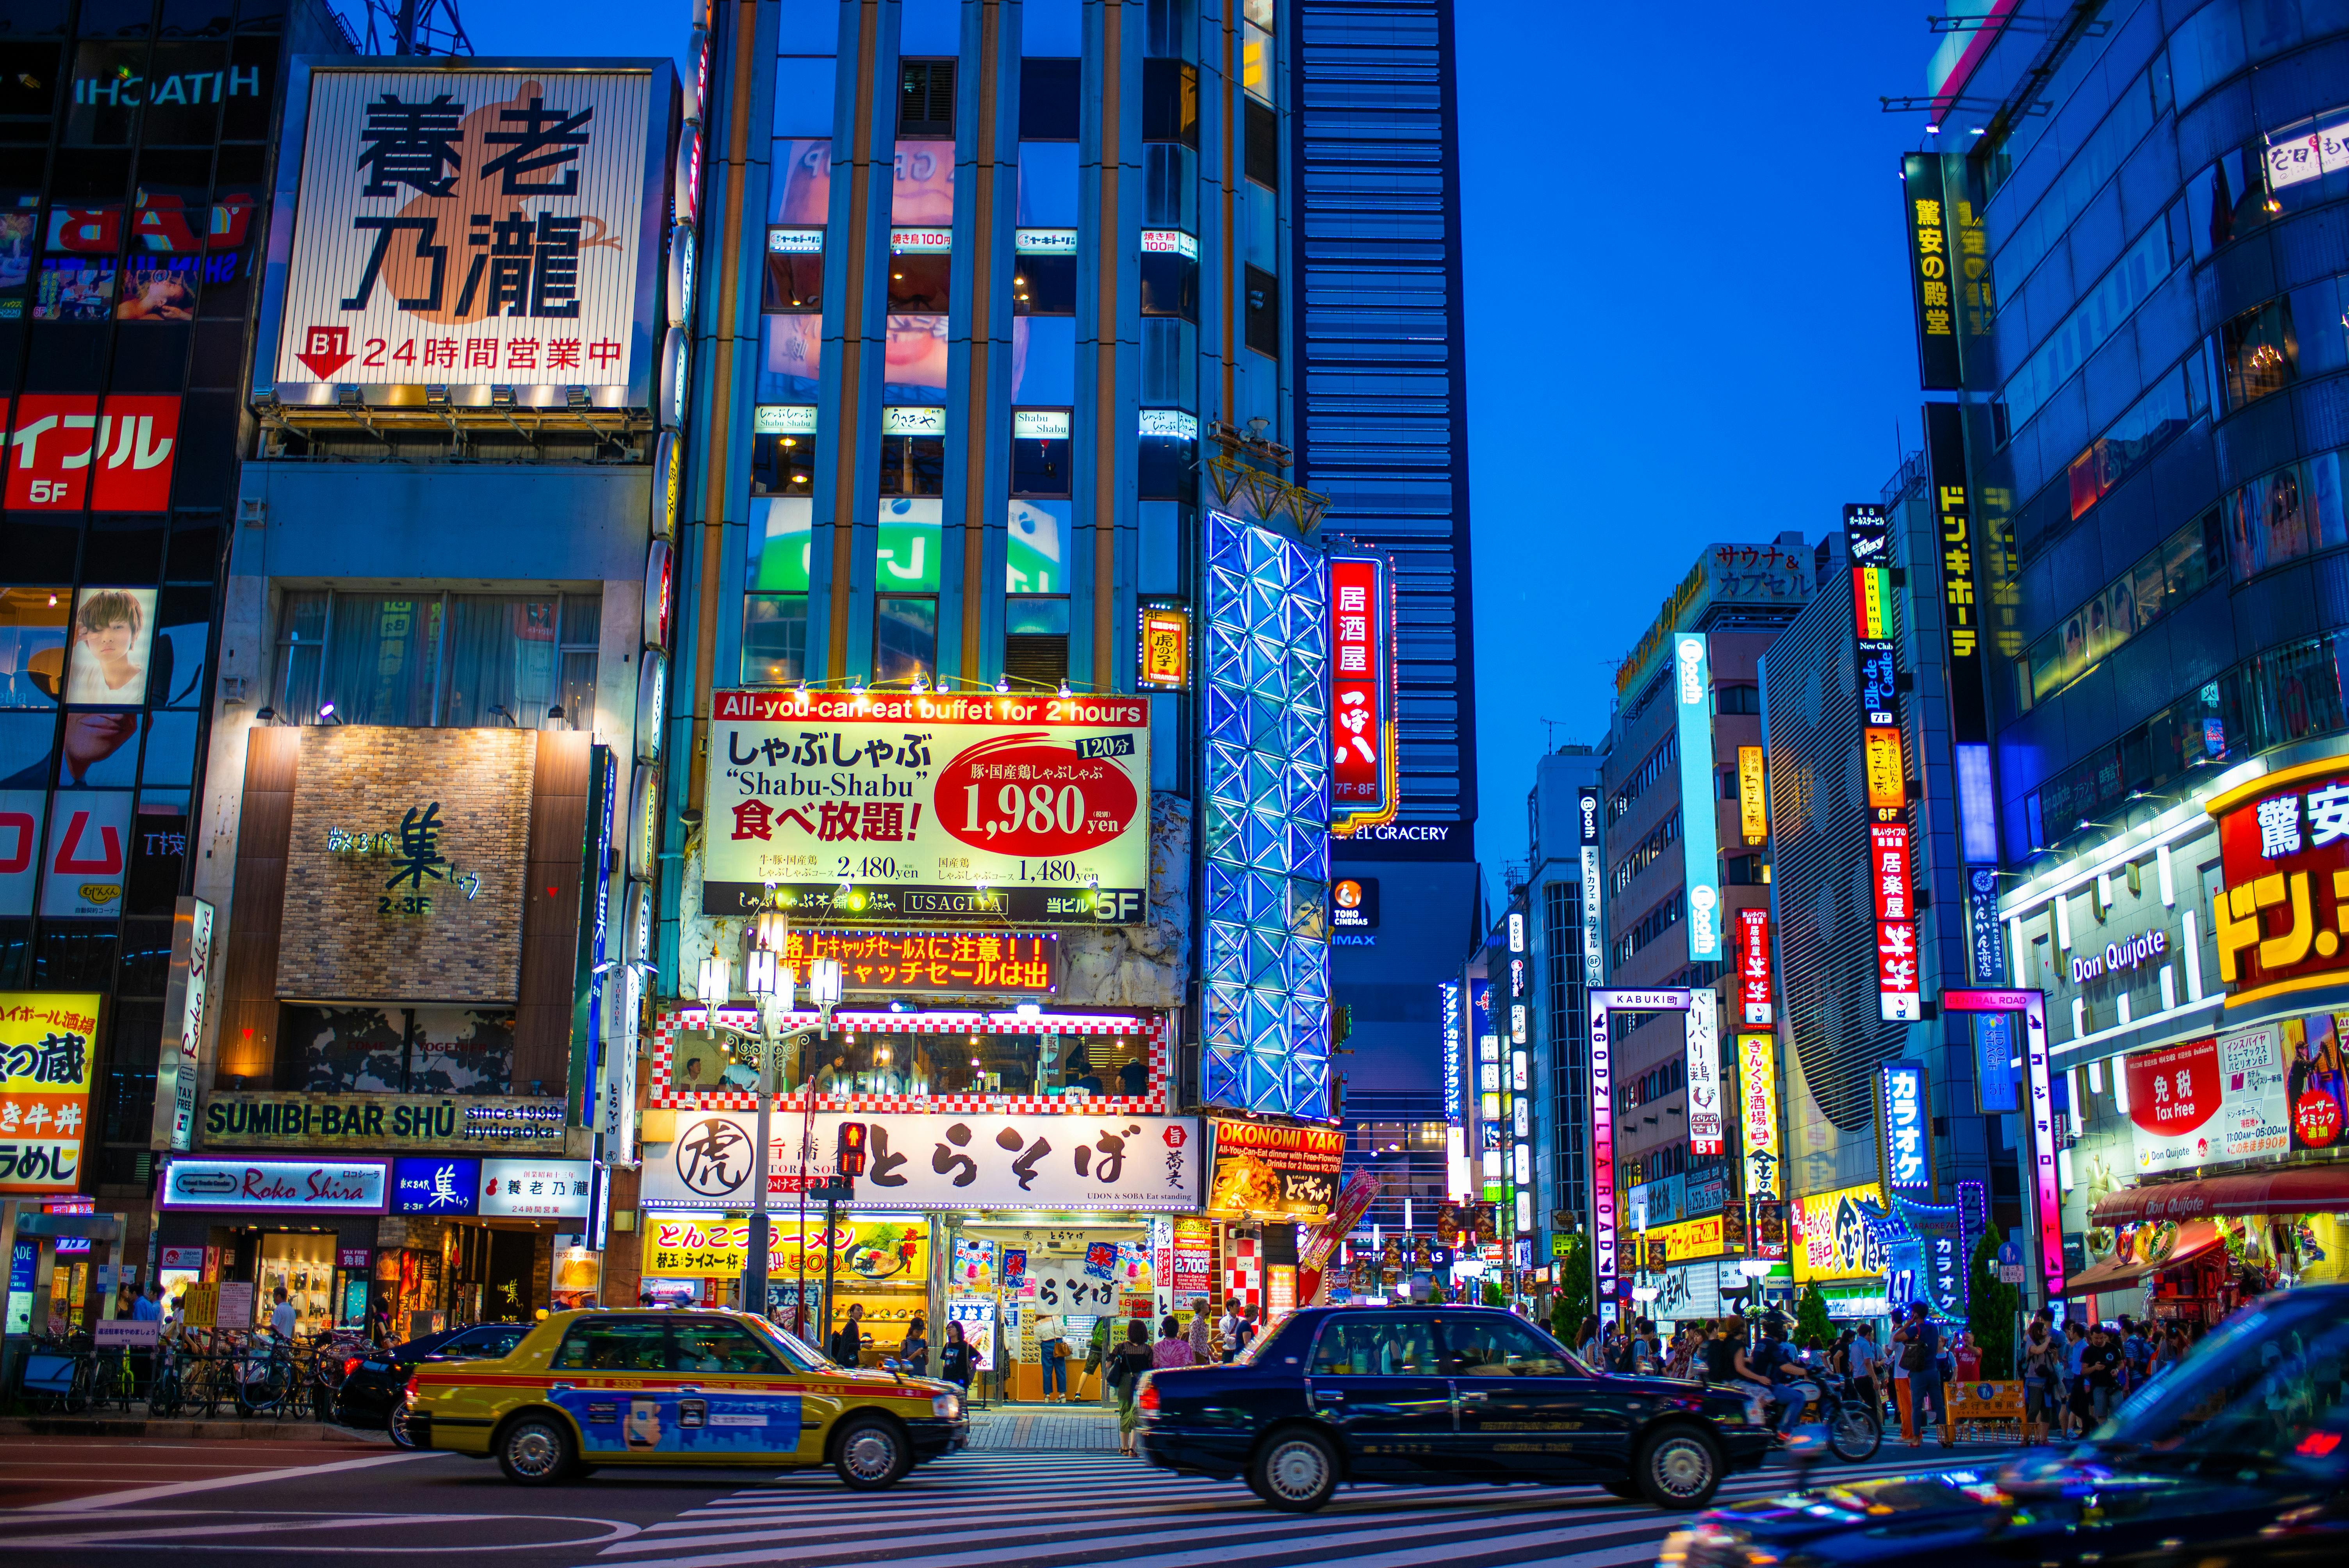 Touren und Ausflüge in Tokio buchen » Topguide24.com